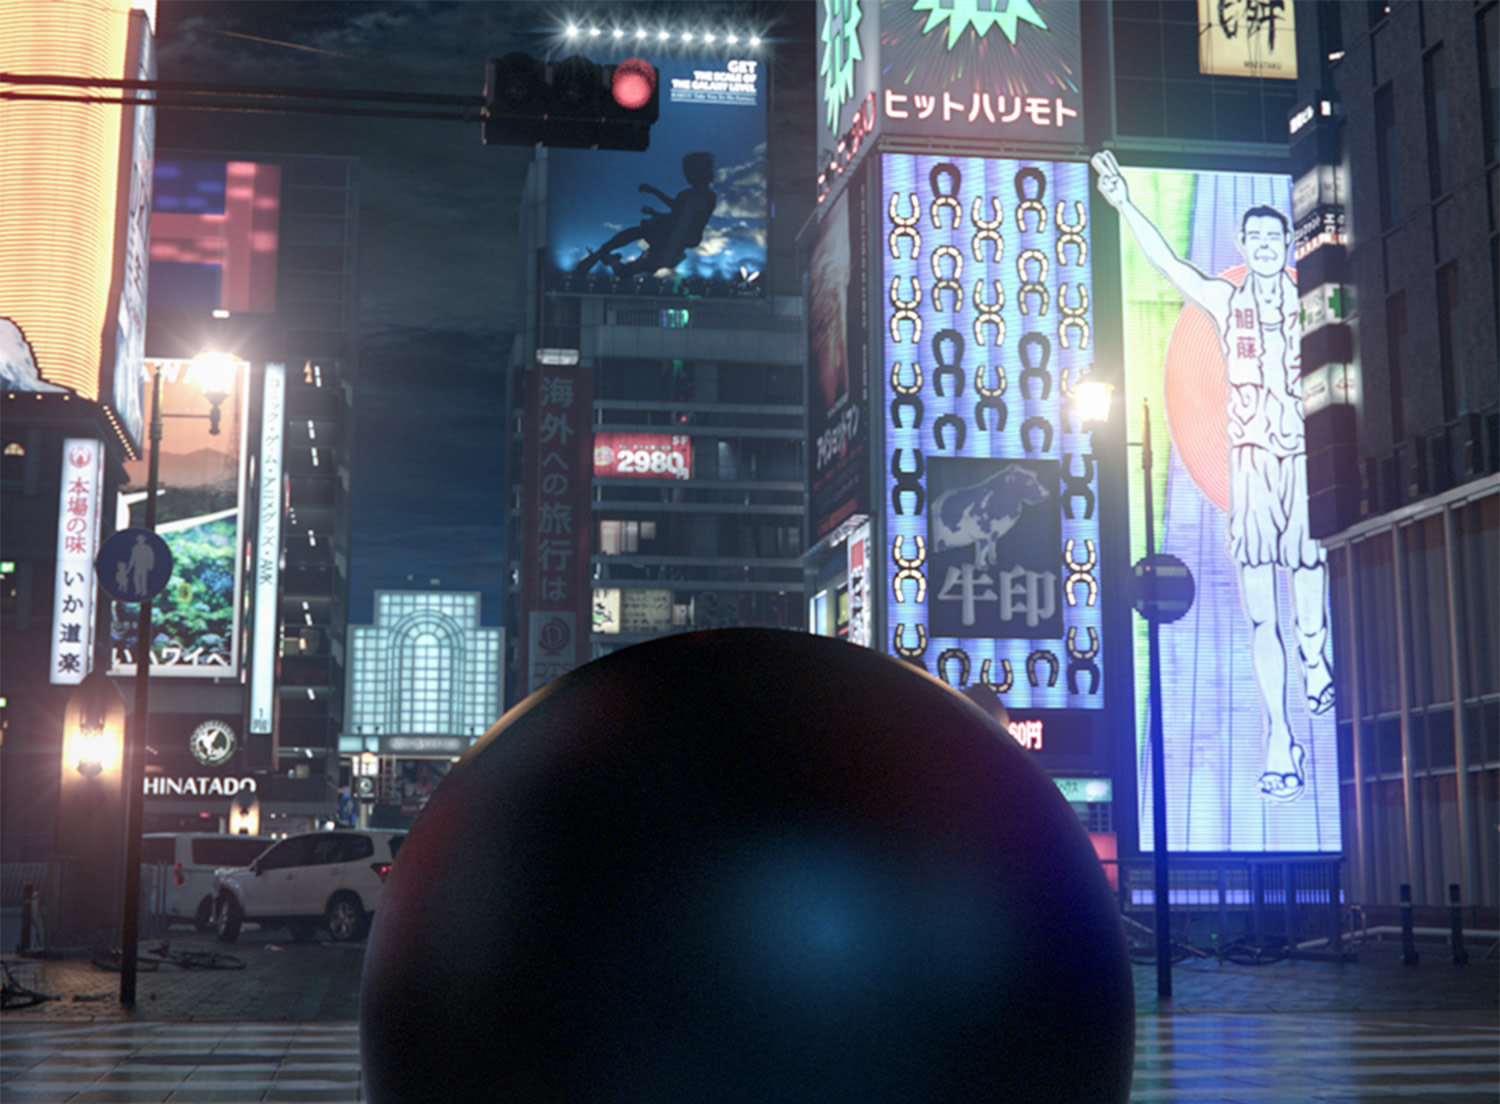 3d sphere in japanese city, GANTZ: 3DCG